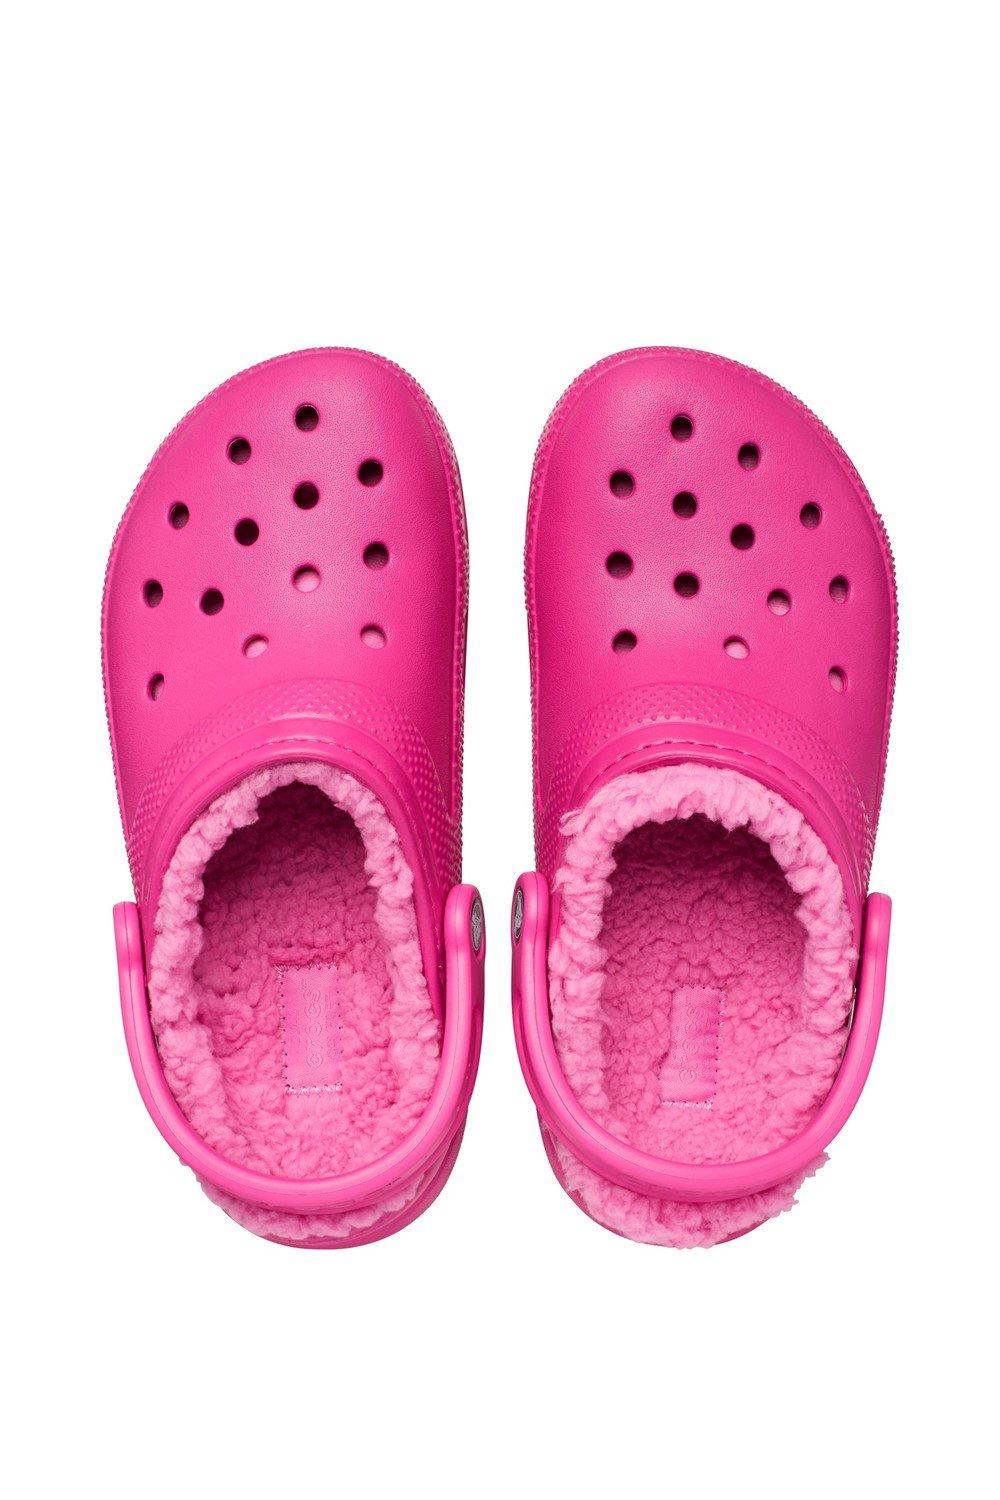 Crocs Mood Shoe Decoration Charms Multicolour - One Size 